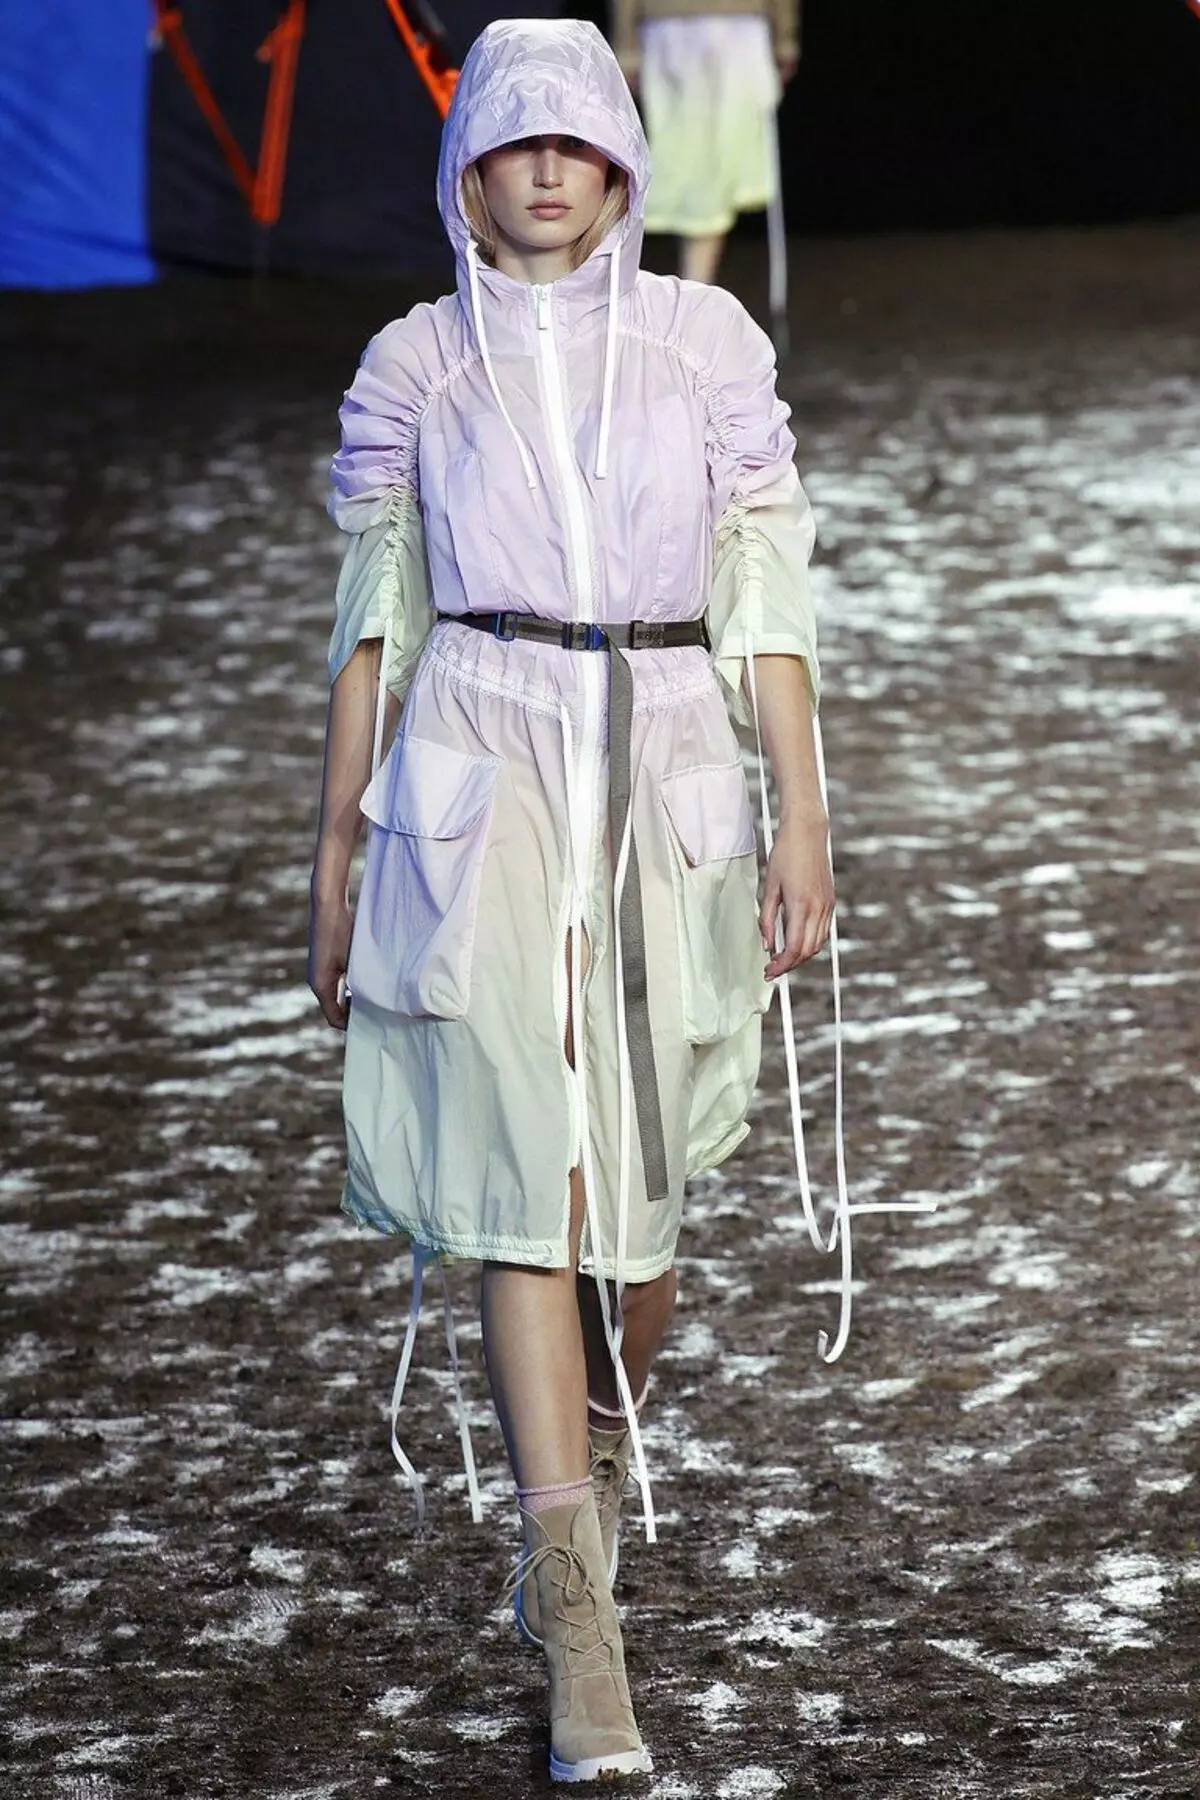 Kadın Yağmurluk: Bir ceket ve yağmurluk yağmurluk nasıl seçilir, bir başlık, tek kullanımlık ve yeniden kullanılabilir, ne giymeli 14307_68